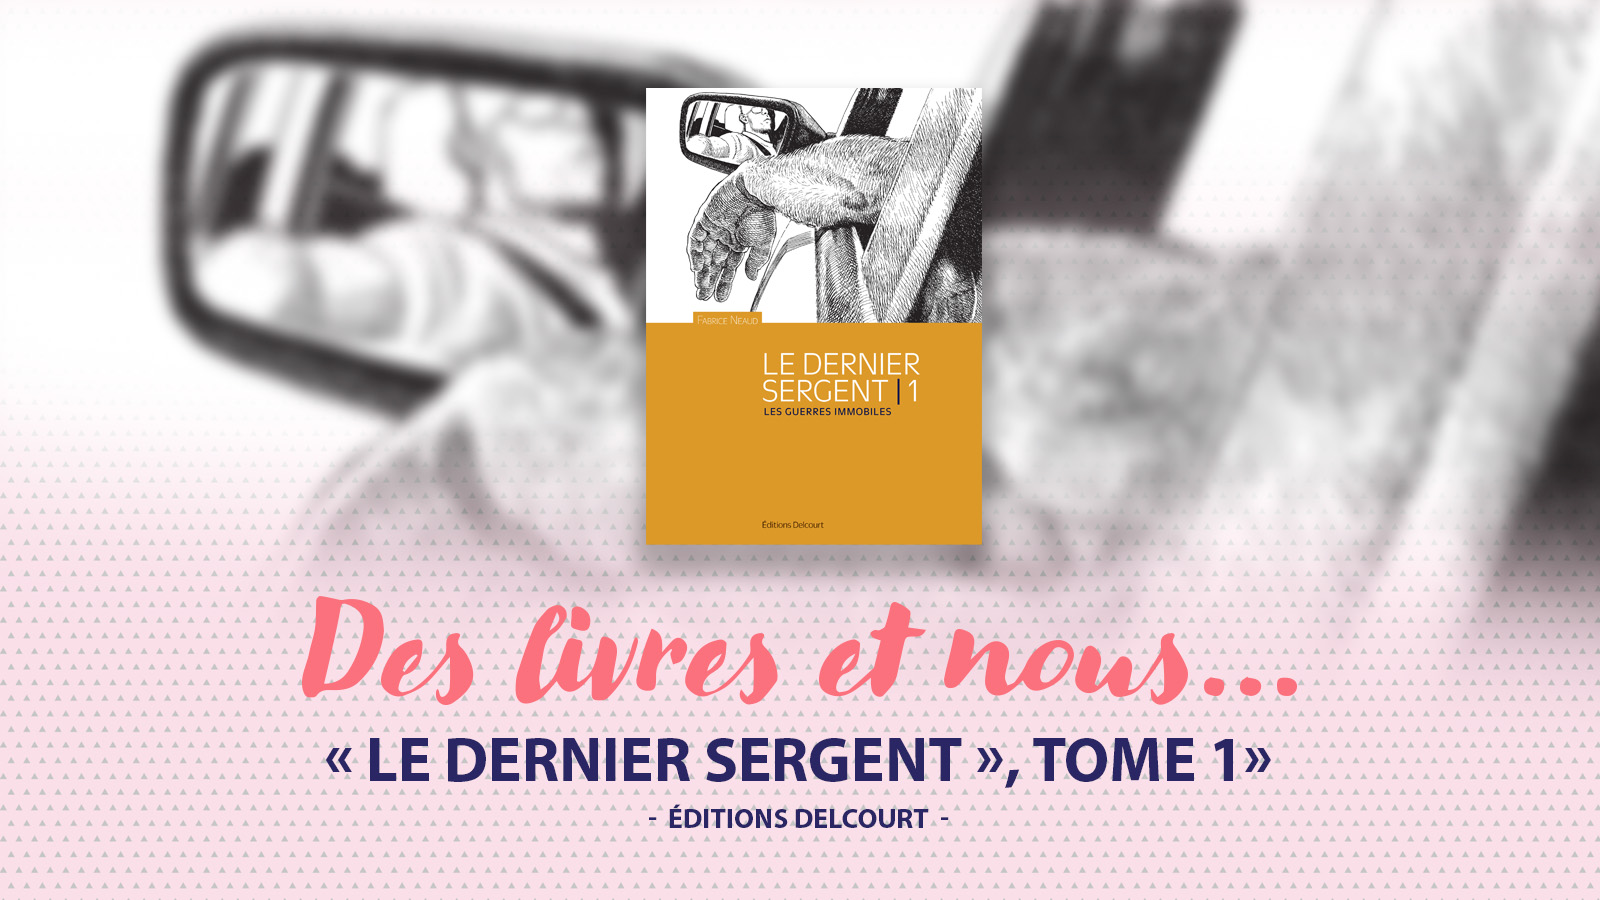 « Le Dernier Sergent », tome 1 de Fabrice Neaud